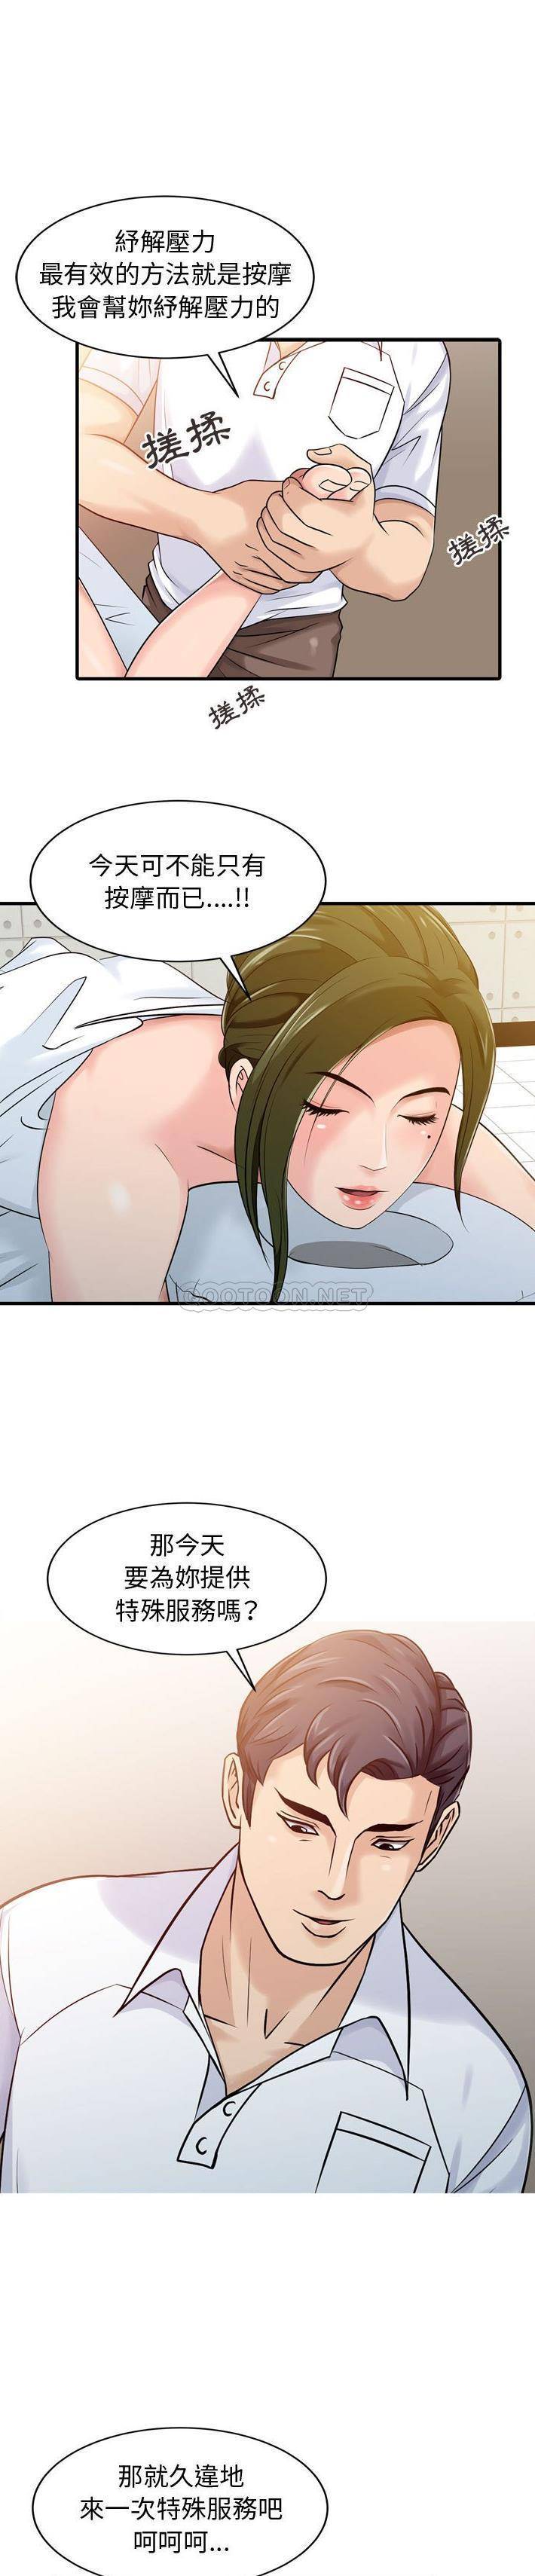 韩国污漫画 征服的滋味 第3话 1